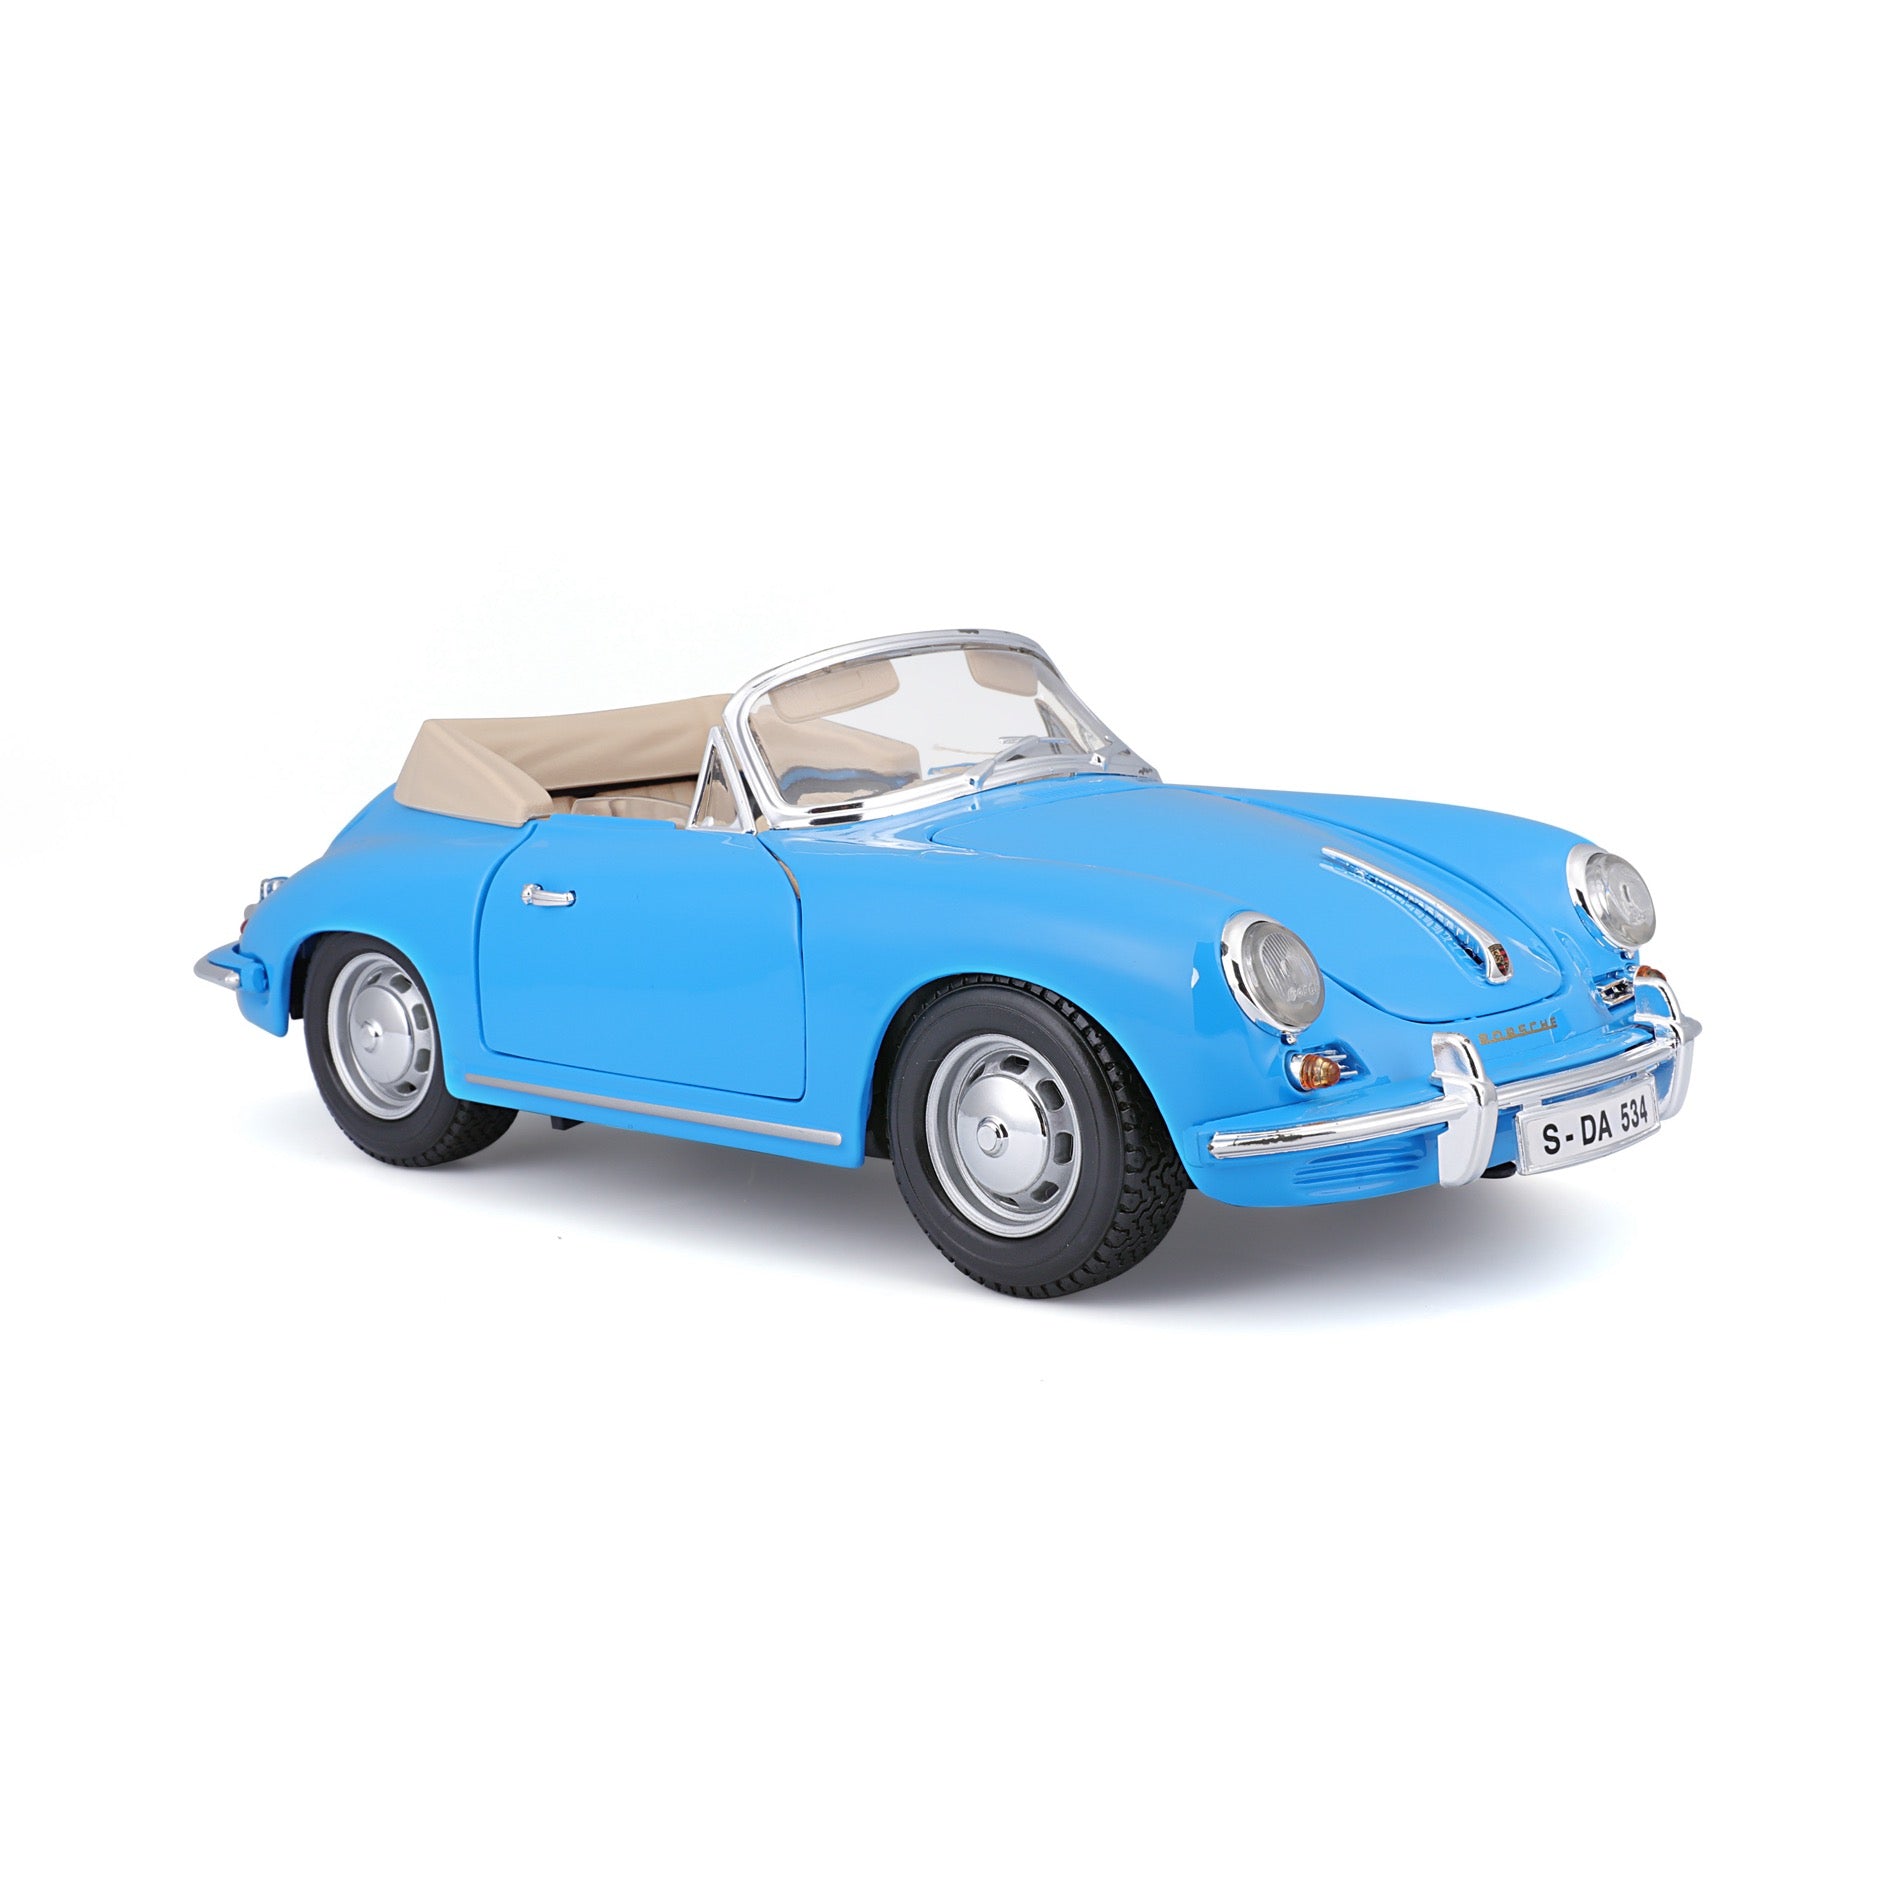 18-12025 - Bburago - 1:18 - 1961 Porsche 356B Cabriolet - Blue